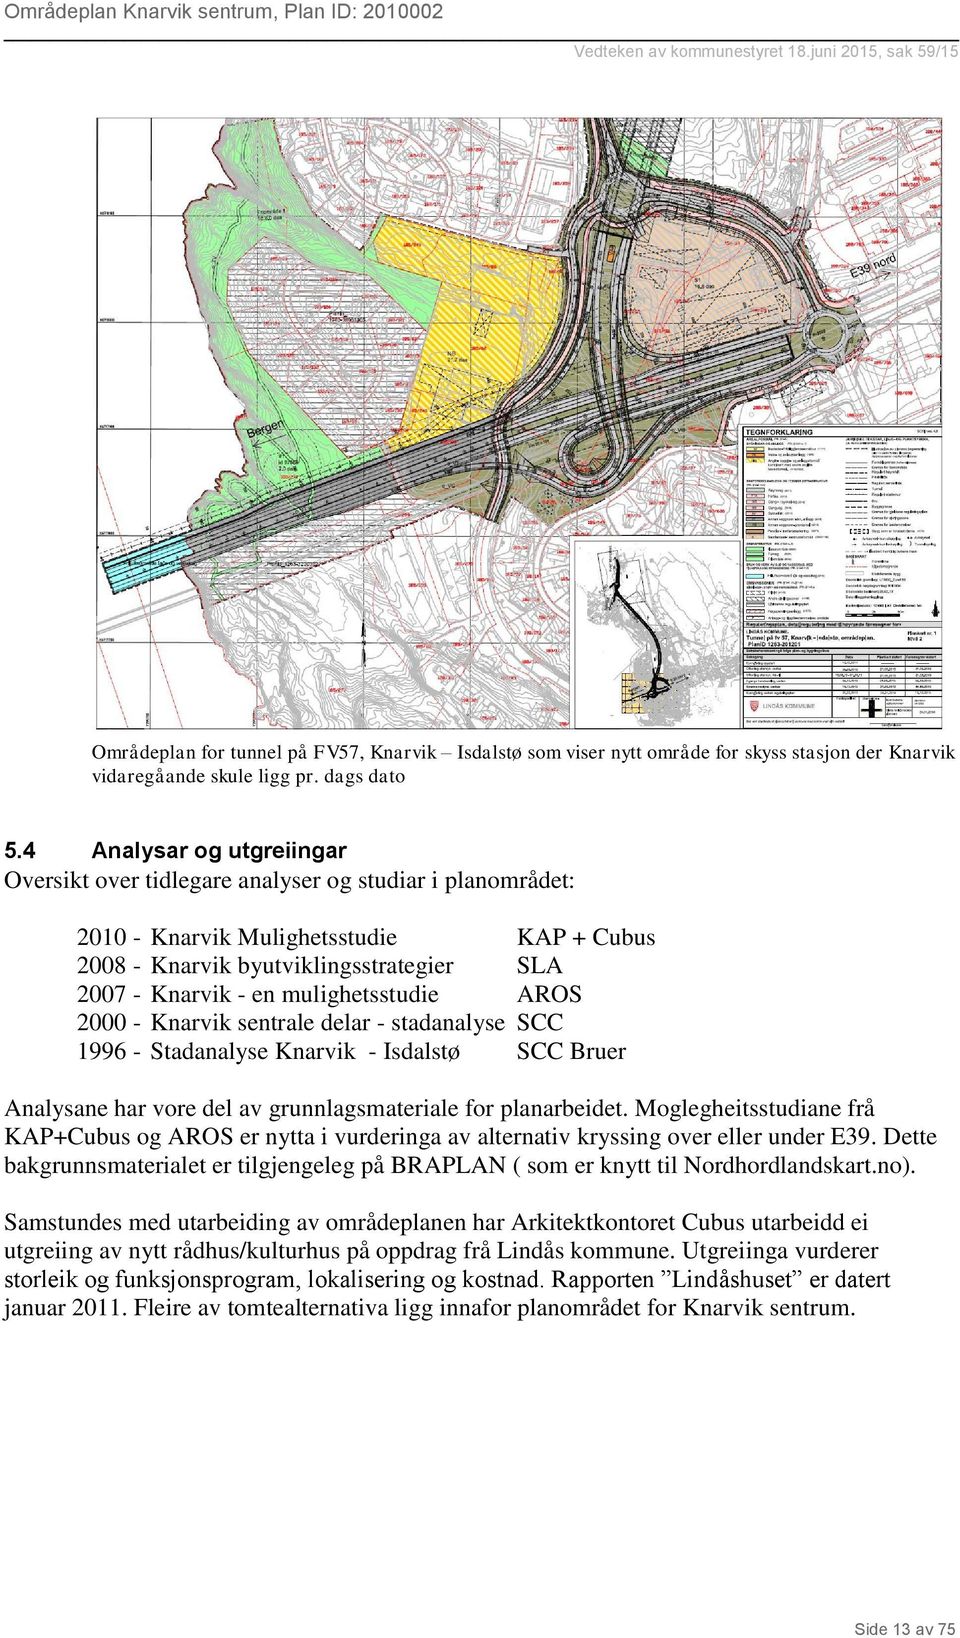 mulighetsstudie AROS 2000 - Knarvik sentrale delar - stadanalyse SCC 1996 - Stadanalyse Knarvik - Isdalstø SCC Bruer Analysane har vore del av grunnlagsmateriale for planarbeidet.